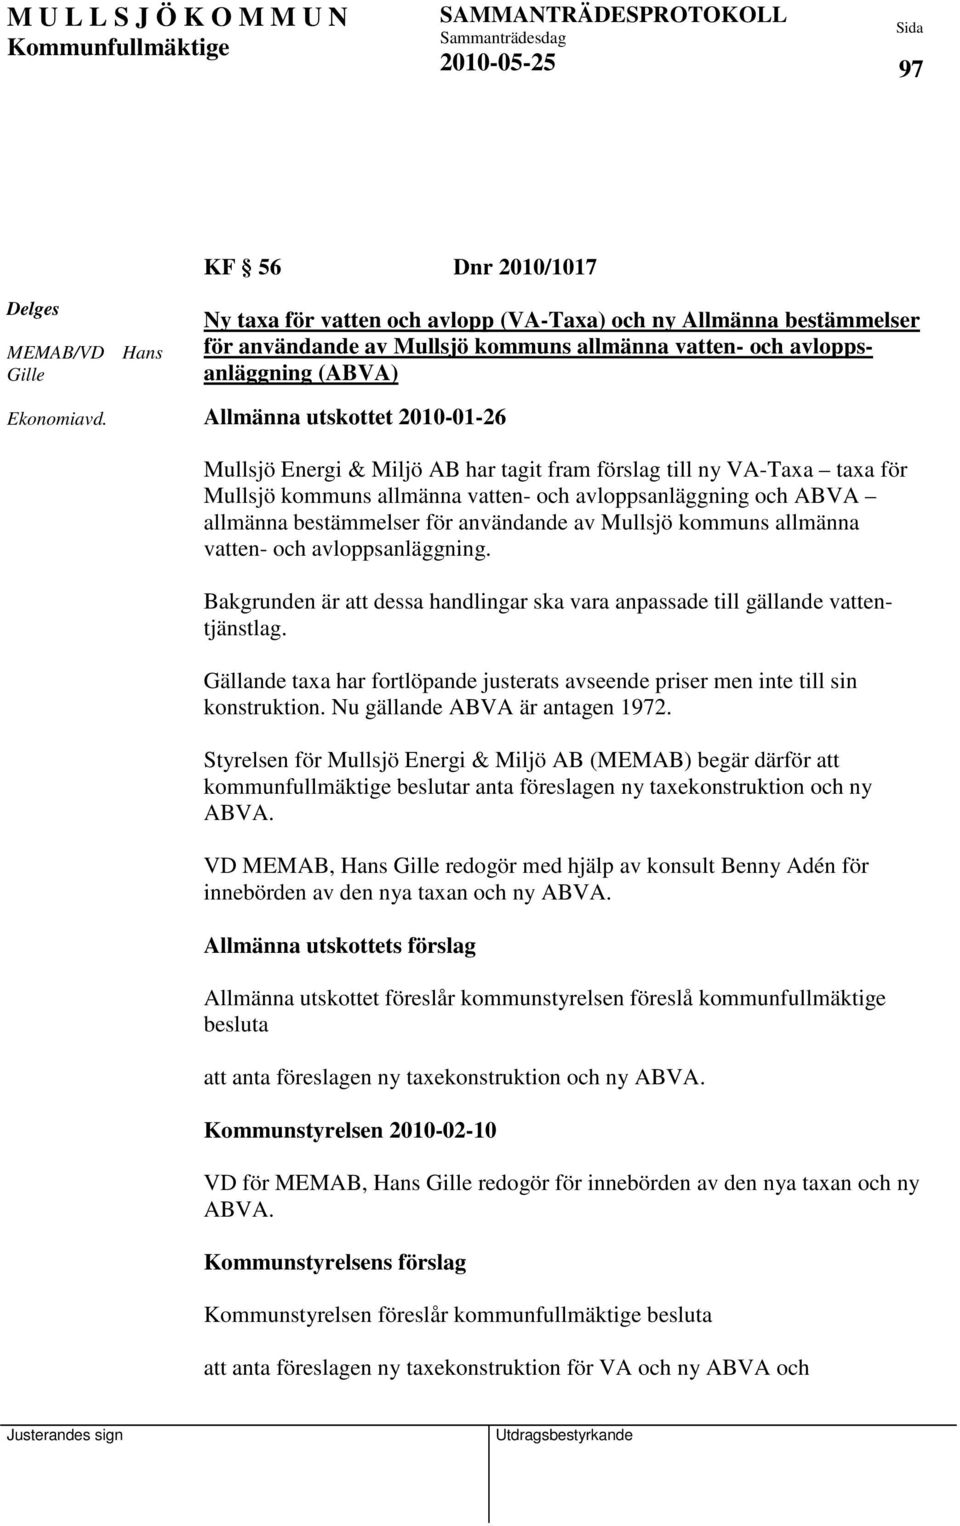 Miljö AB har tagit fram förslag till ny VA-Taxa taxa för Mullsjö kommuns allmänna vatten- och avloppsanläggning och ABVA allmänna bestämmelser för användande av Mullsjö kommuns allmänna vatten- och